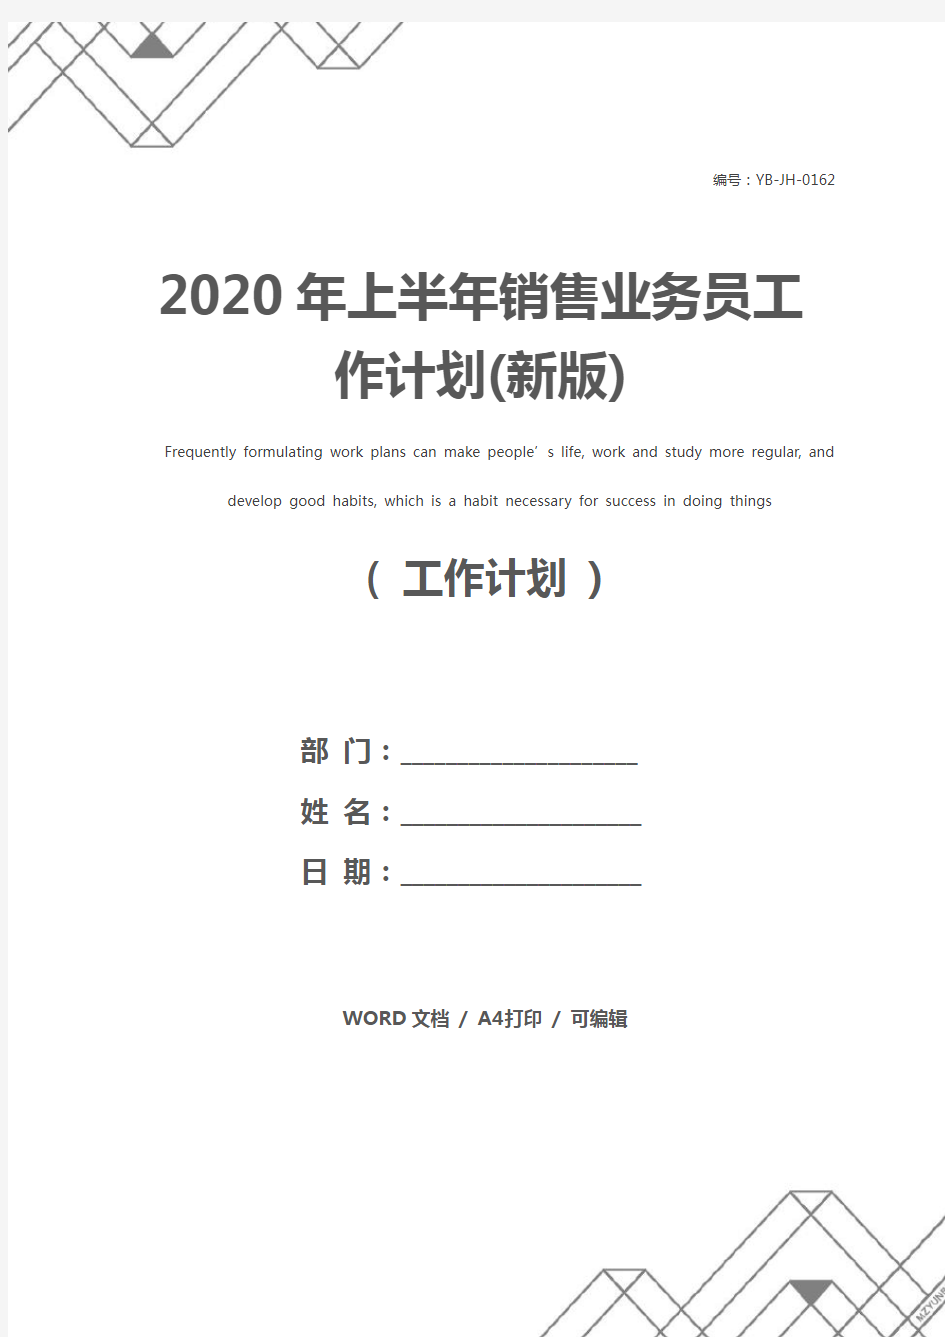 2020年上半年销售业务员工作计划(新版)